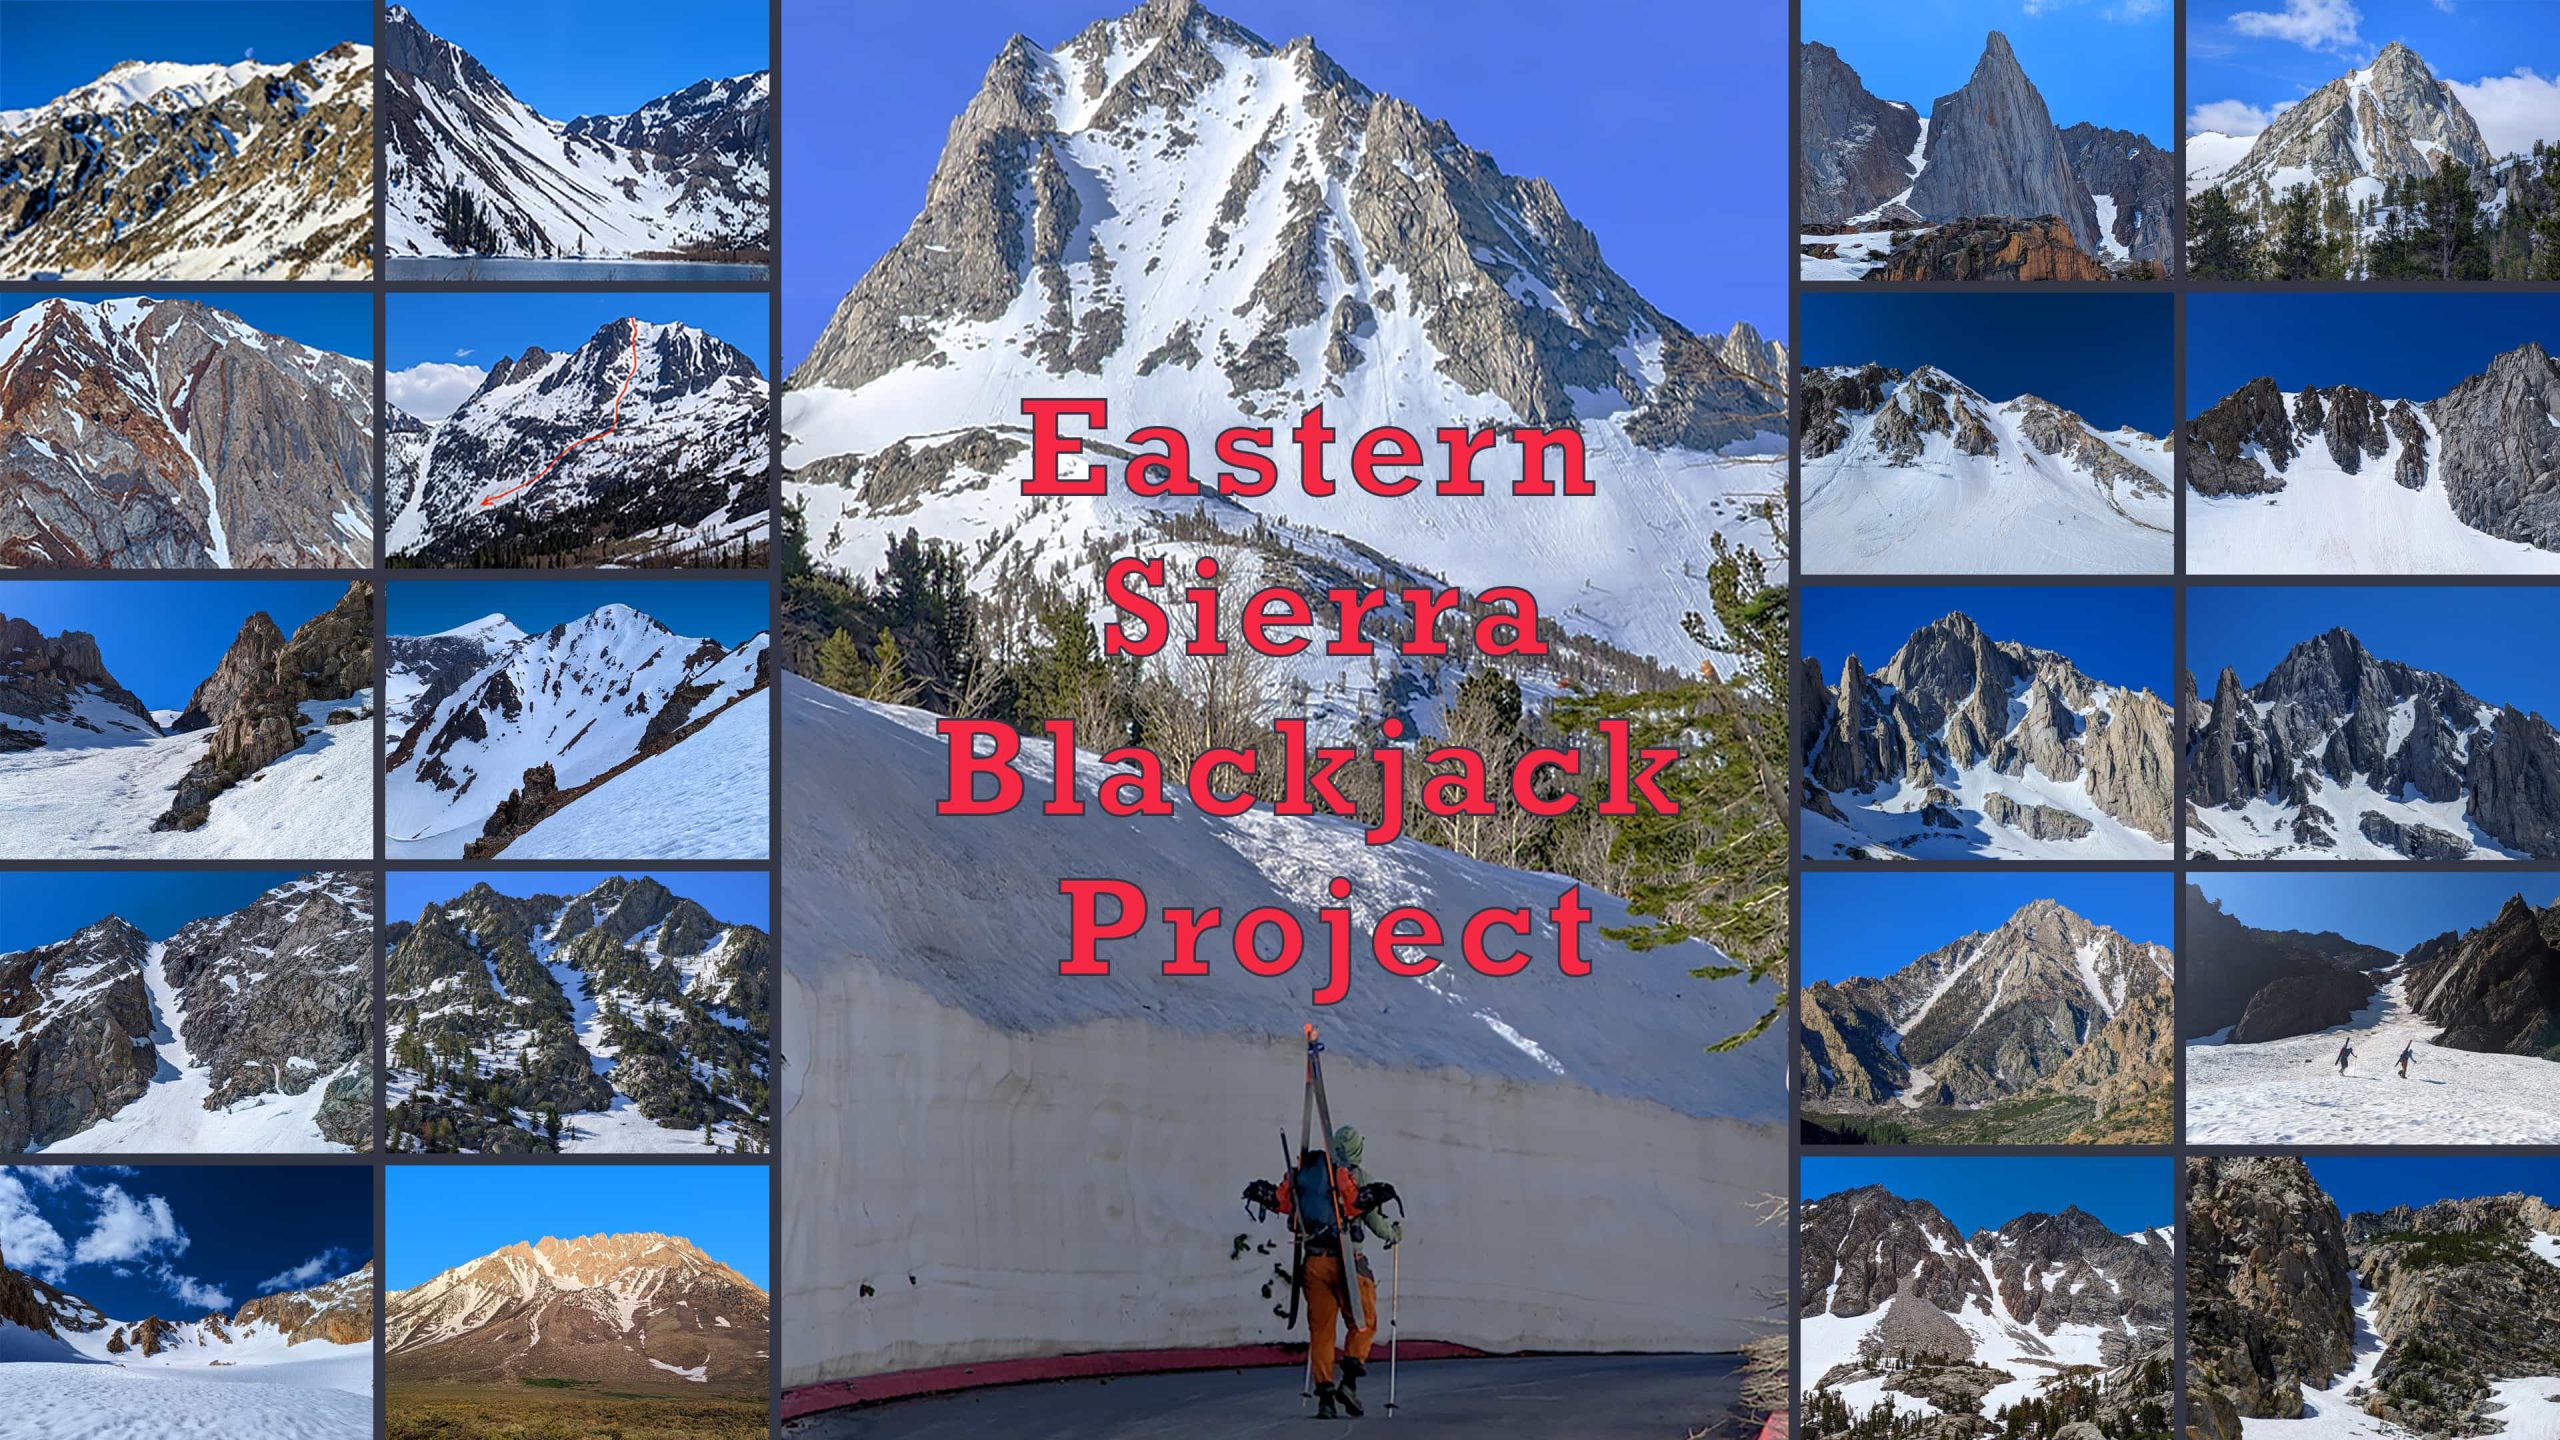 eastern Sierra blackjack project